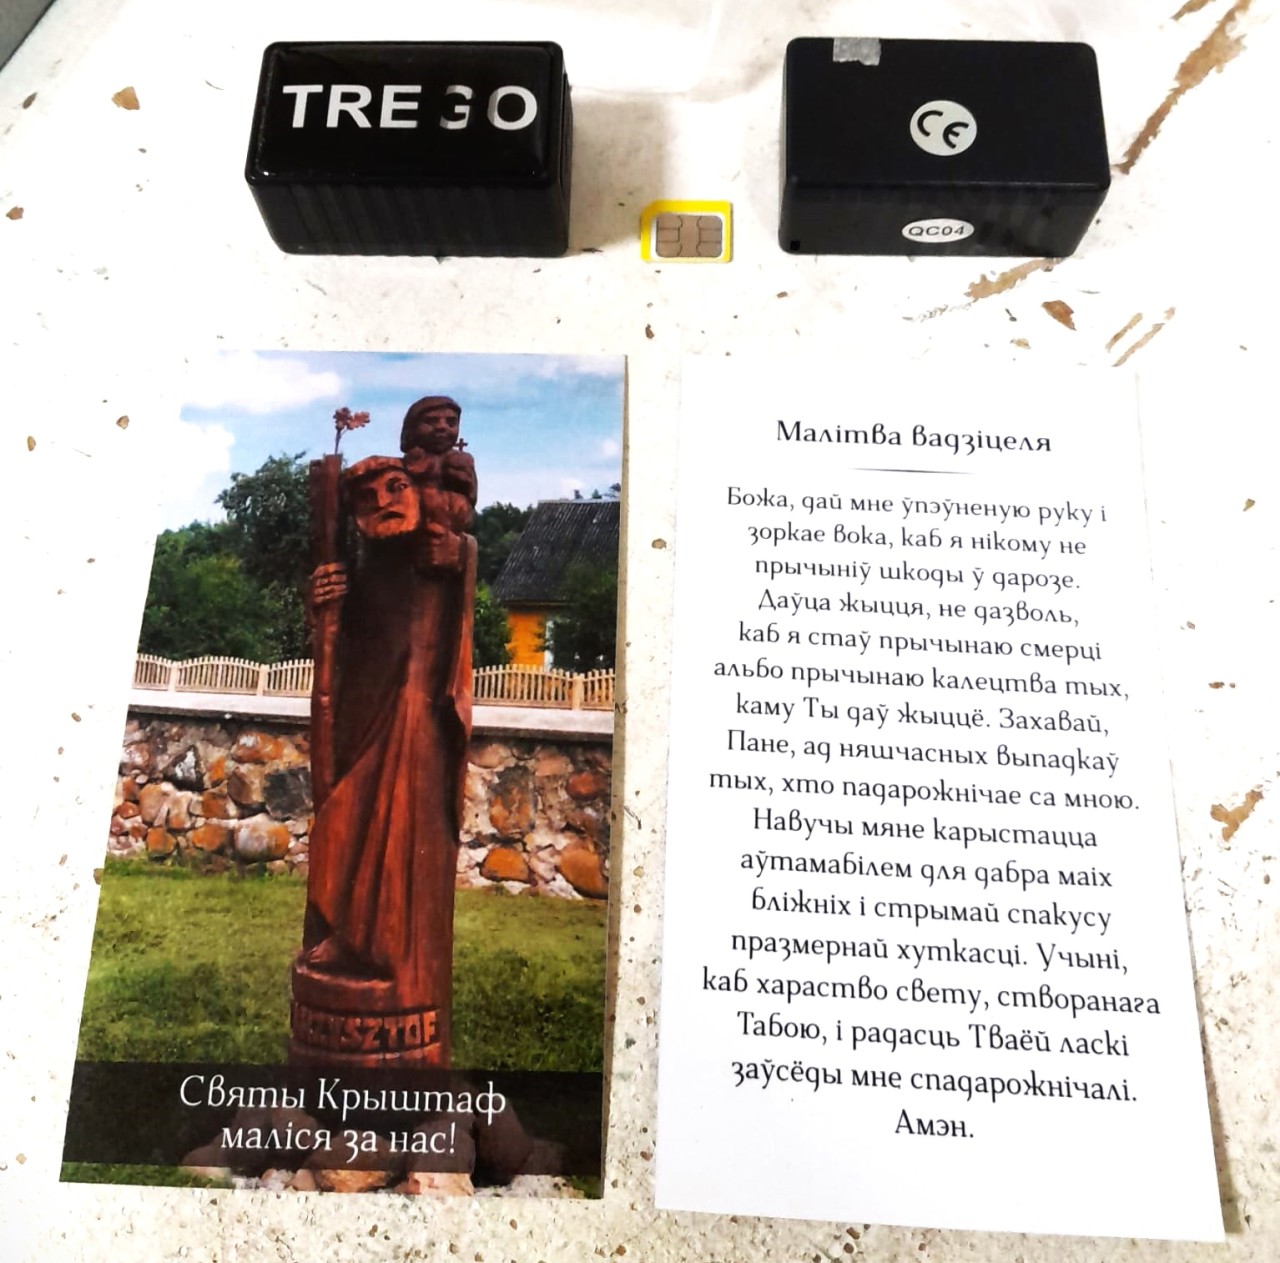 Бог не помог: беларусские сигареты с иконой и молитвой перехватили в Литве